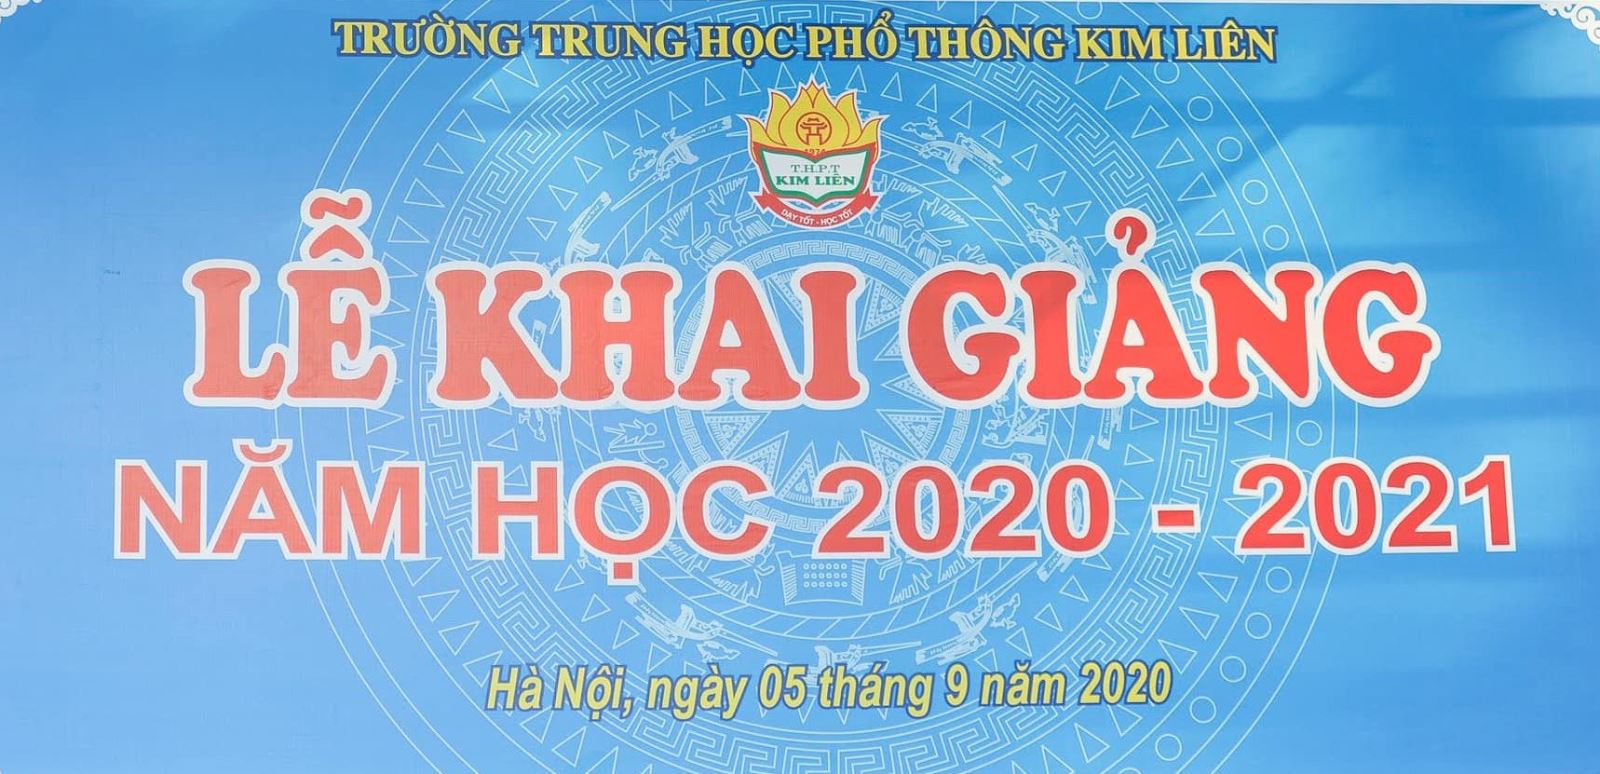 LỄ KHAI GIẢNG NĂM HỌC 2020 – 2021